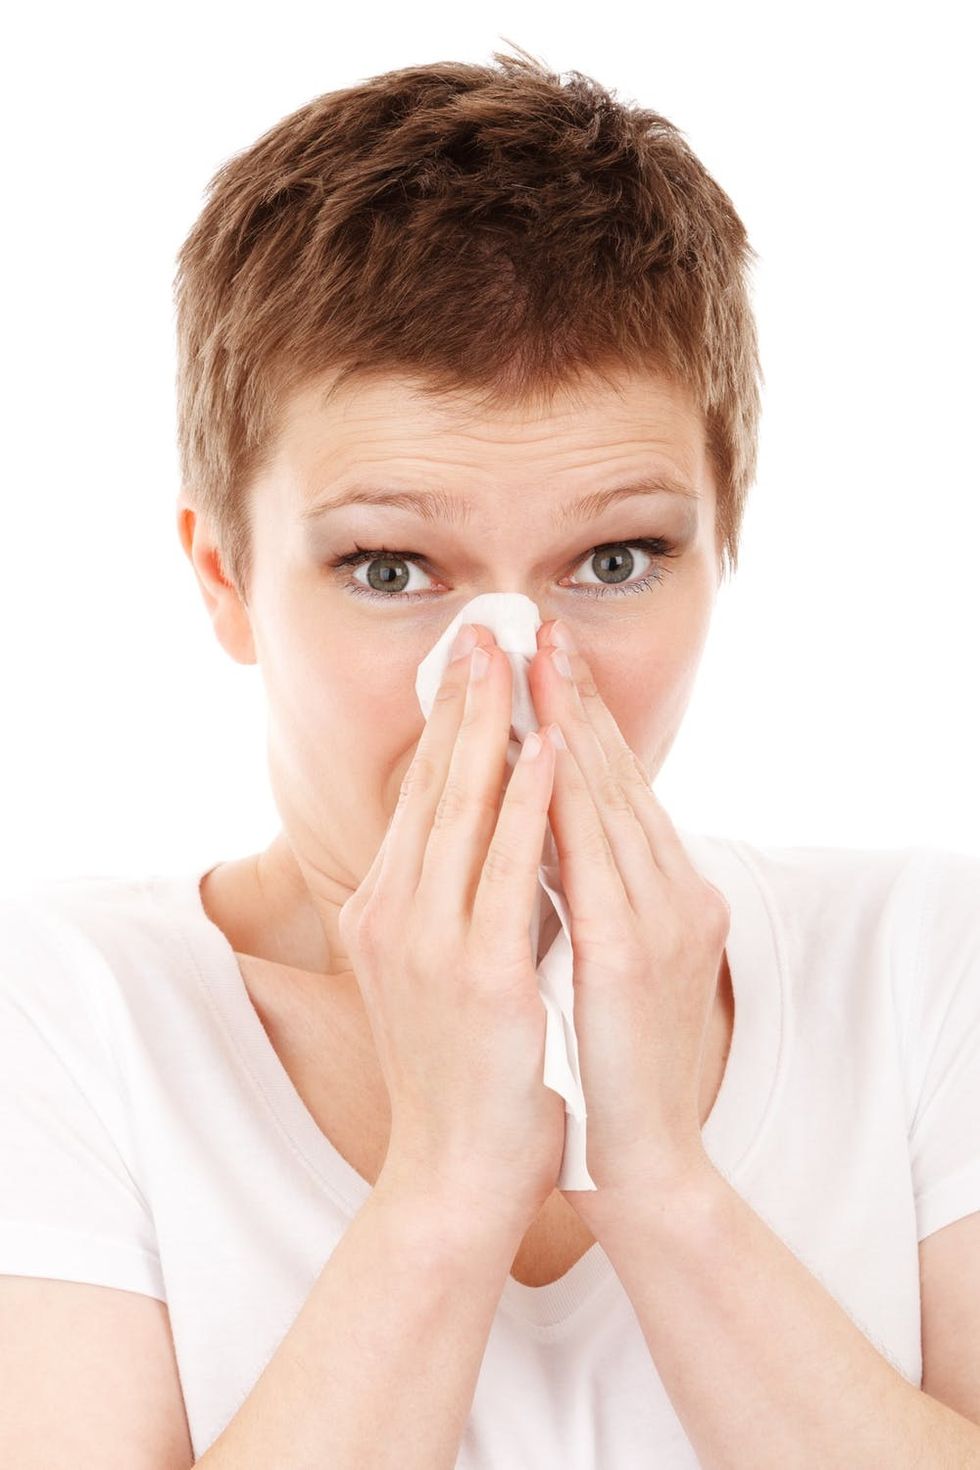 3 Ways to Avoid the Flu